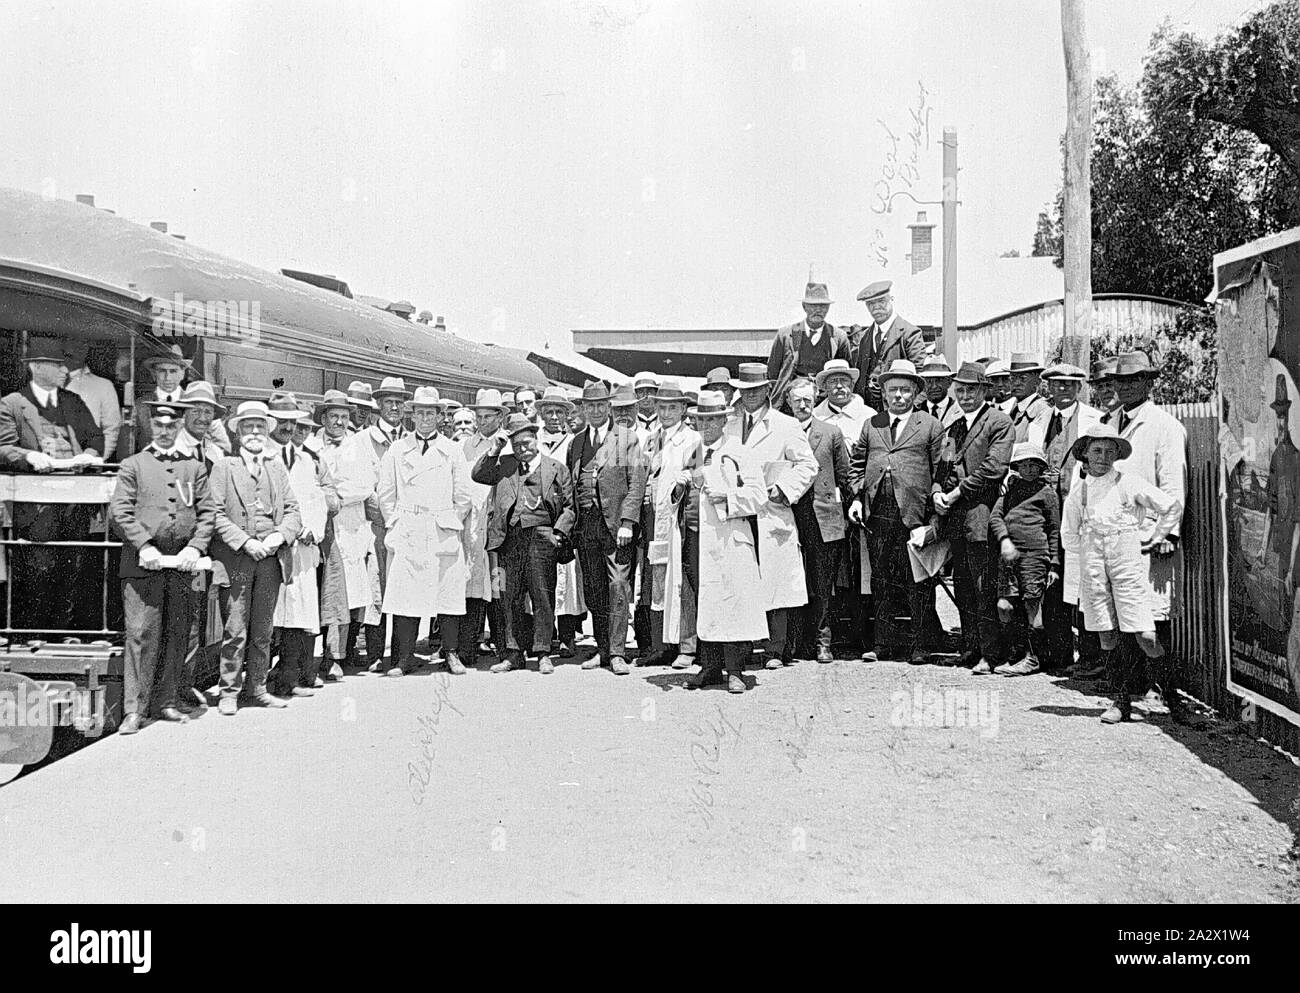 Negative - Regenbogen, Victoria, 1925, eine große Gruppe von Menschen, die auf der Plattform von Rainbow Bahnhof für den Besuch der besseren landwirtschaftlichen Zug gesammelt. Viele Männer tragen Anzüge, und einige tragen weiße Mäntel (evtl. 'labcoats') über ihre Kleidung. Ein Mann stand auf der linken Seite trägt den Mitarbeitern der Uniform. Ein Plakat ist auf der Plattform Zaun montiert Stockfoto